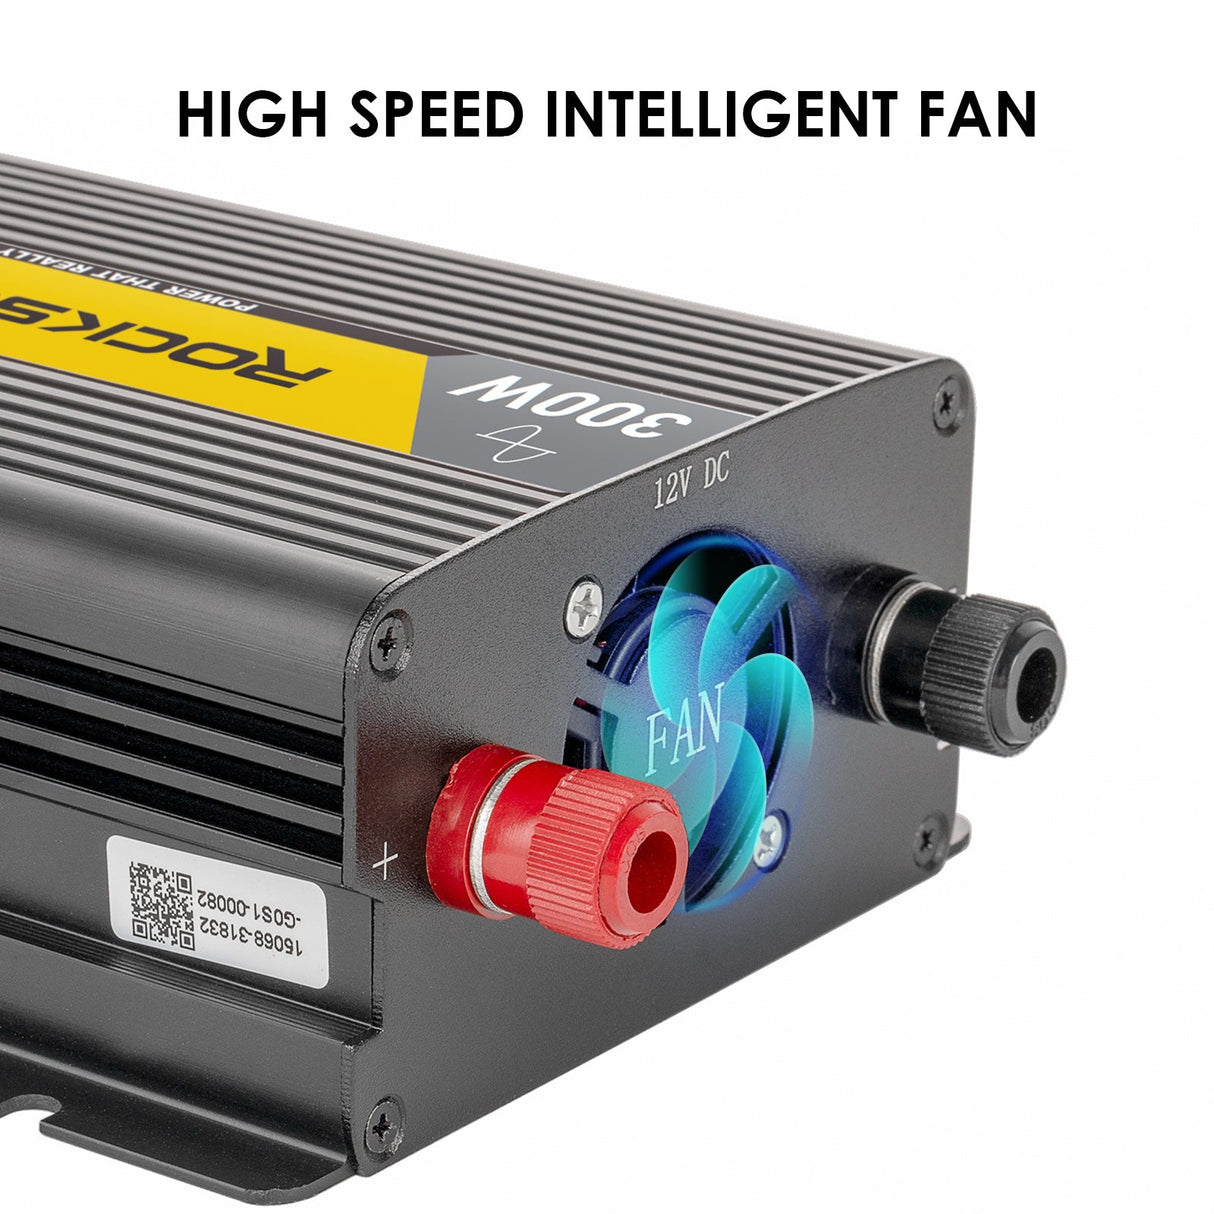 high speed fan on 300w pure sin wave inverter 